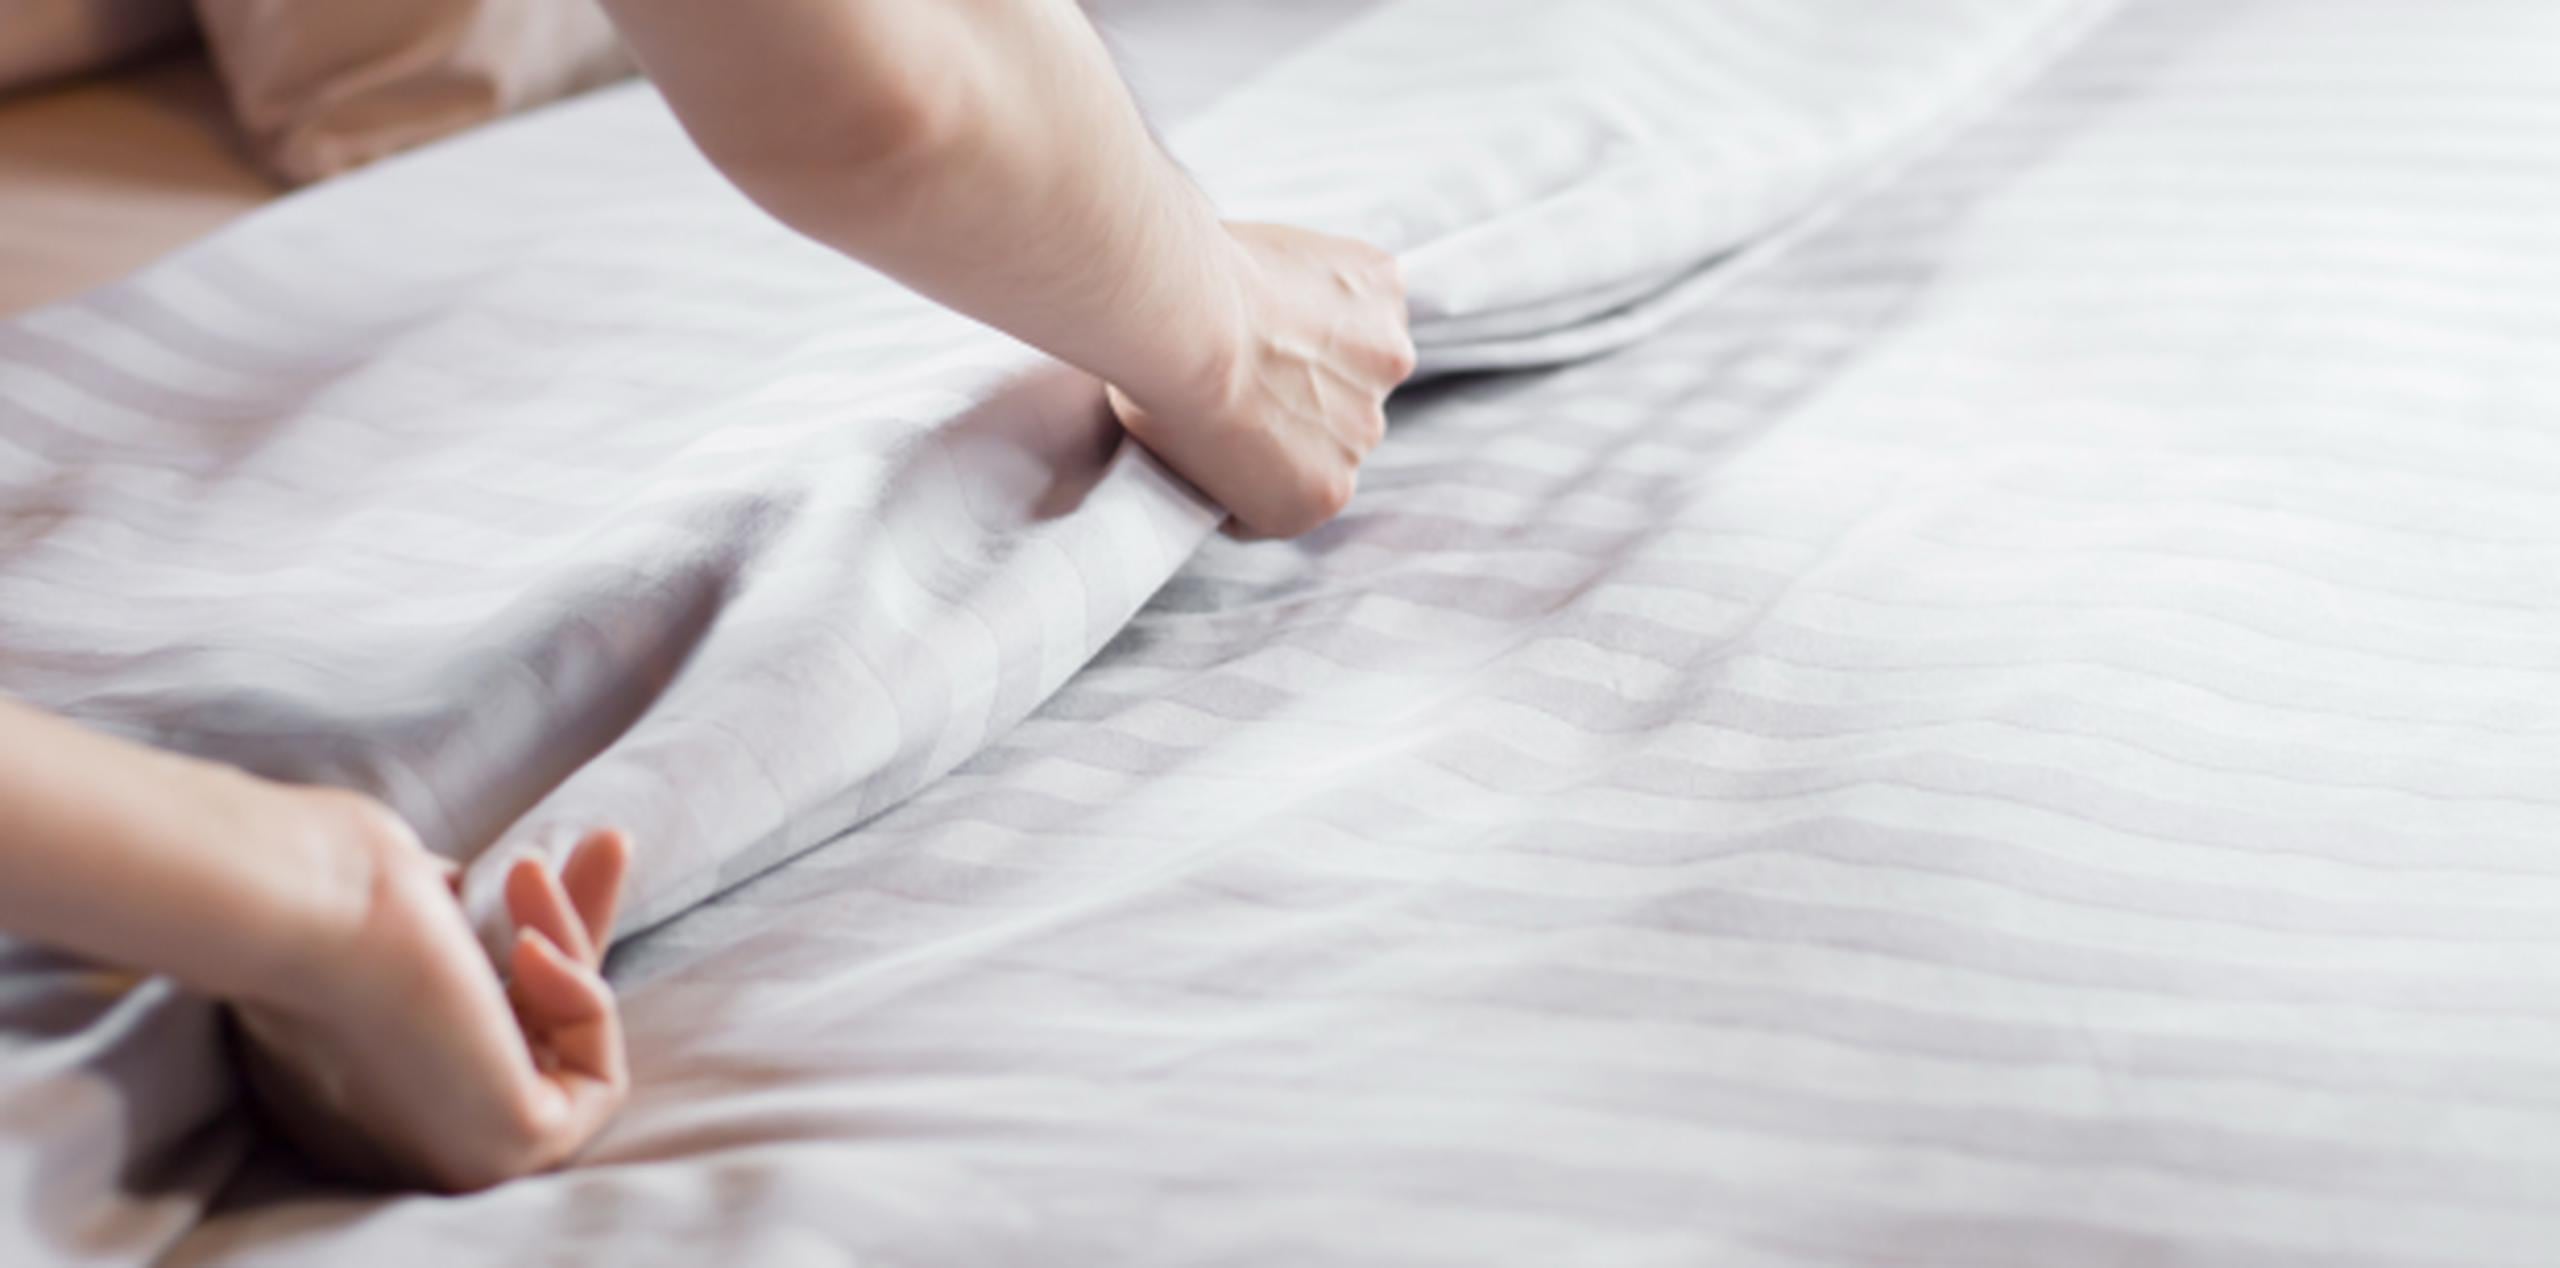 La colcha hay que lavarla con la misma frecuencia que las sábanas y las almohadas. (Shutterstock)